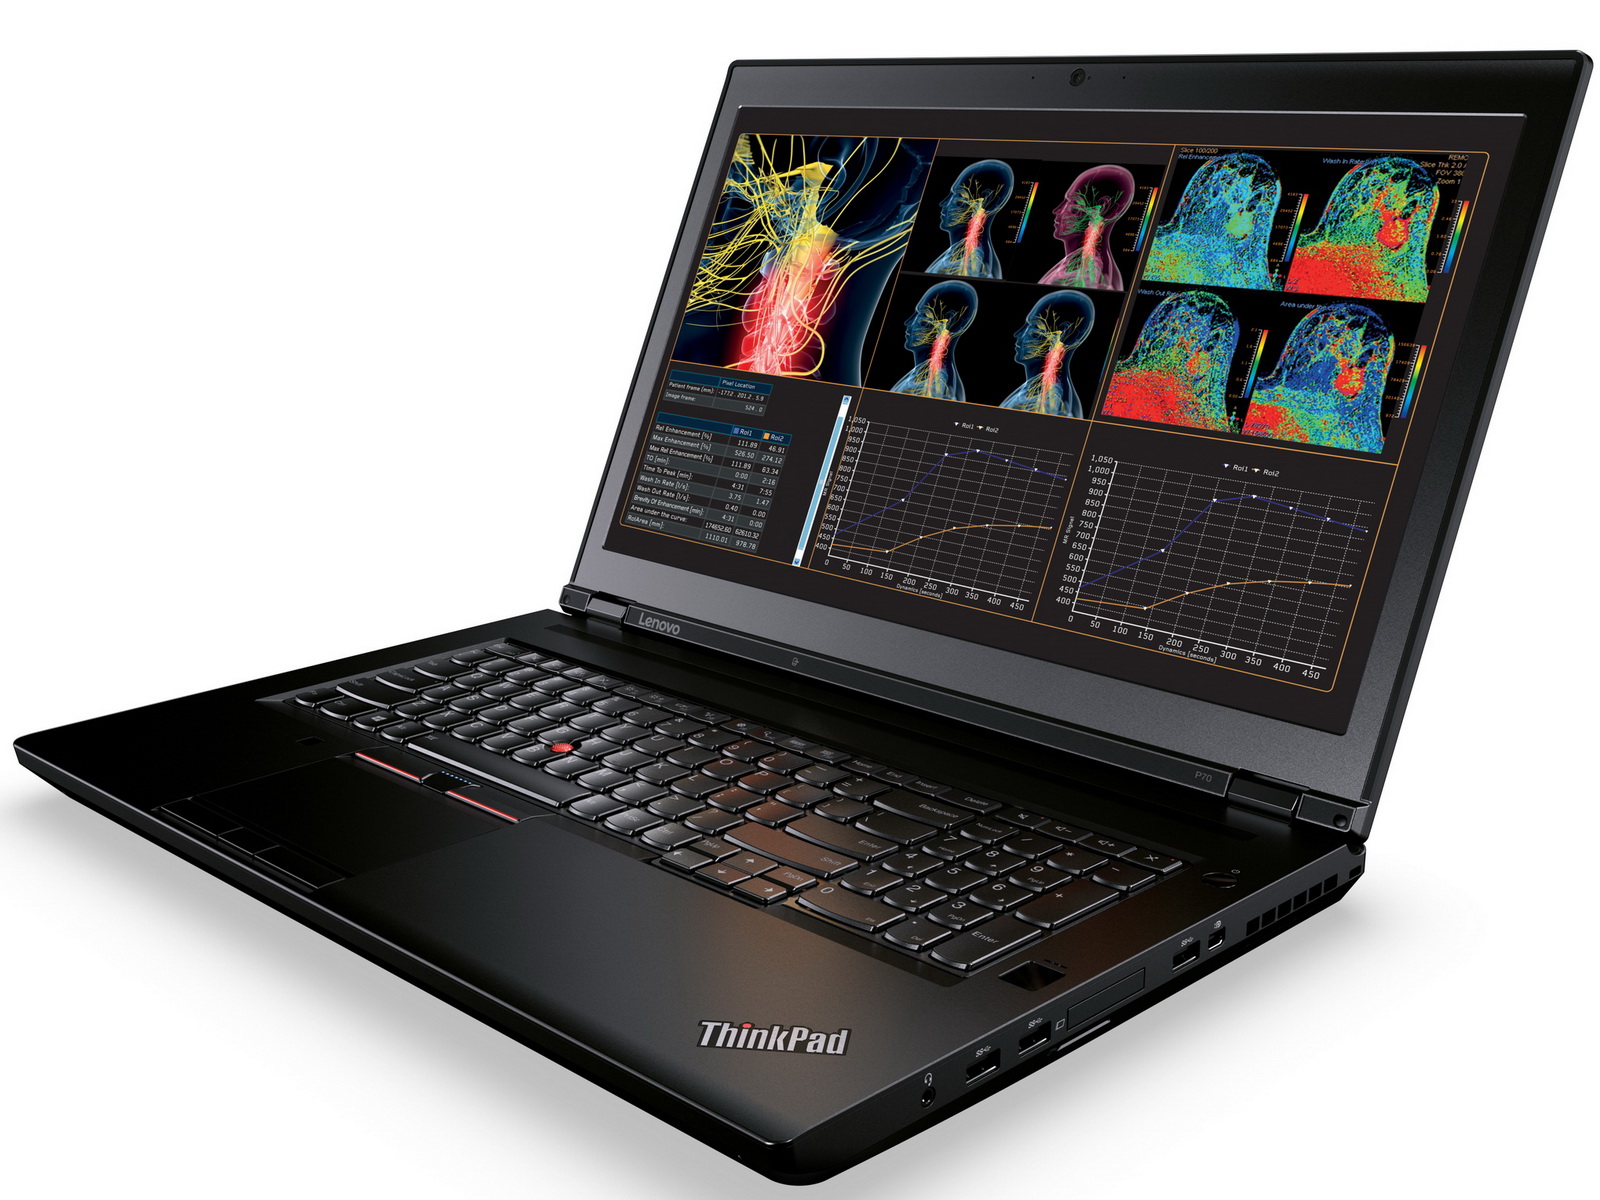 Lenovo anuncia la disponibilidad del nuevo ThinkPad A con tecnología AMD en su tienda online